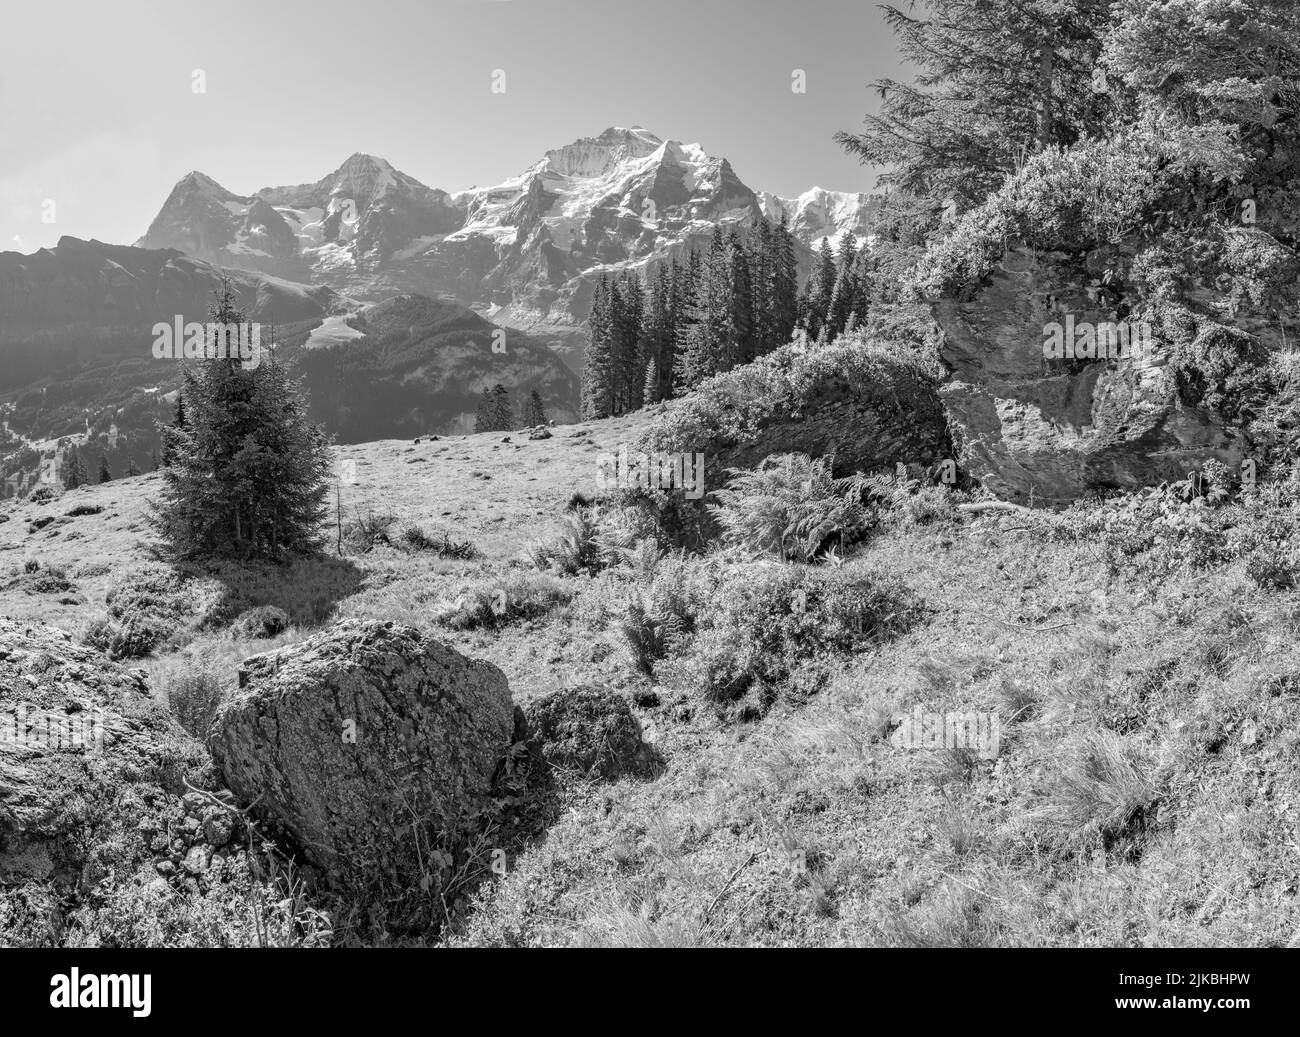 Die Berner alpen mit der Jungfrau, dem Mönch und dem Eiger über den almen. Stockfoto